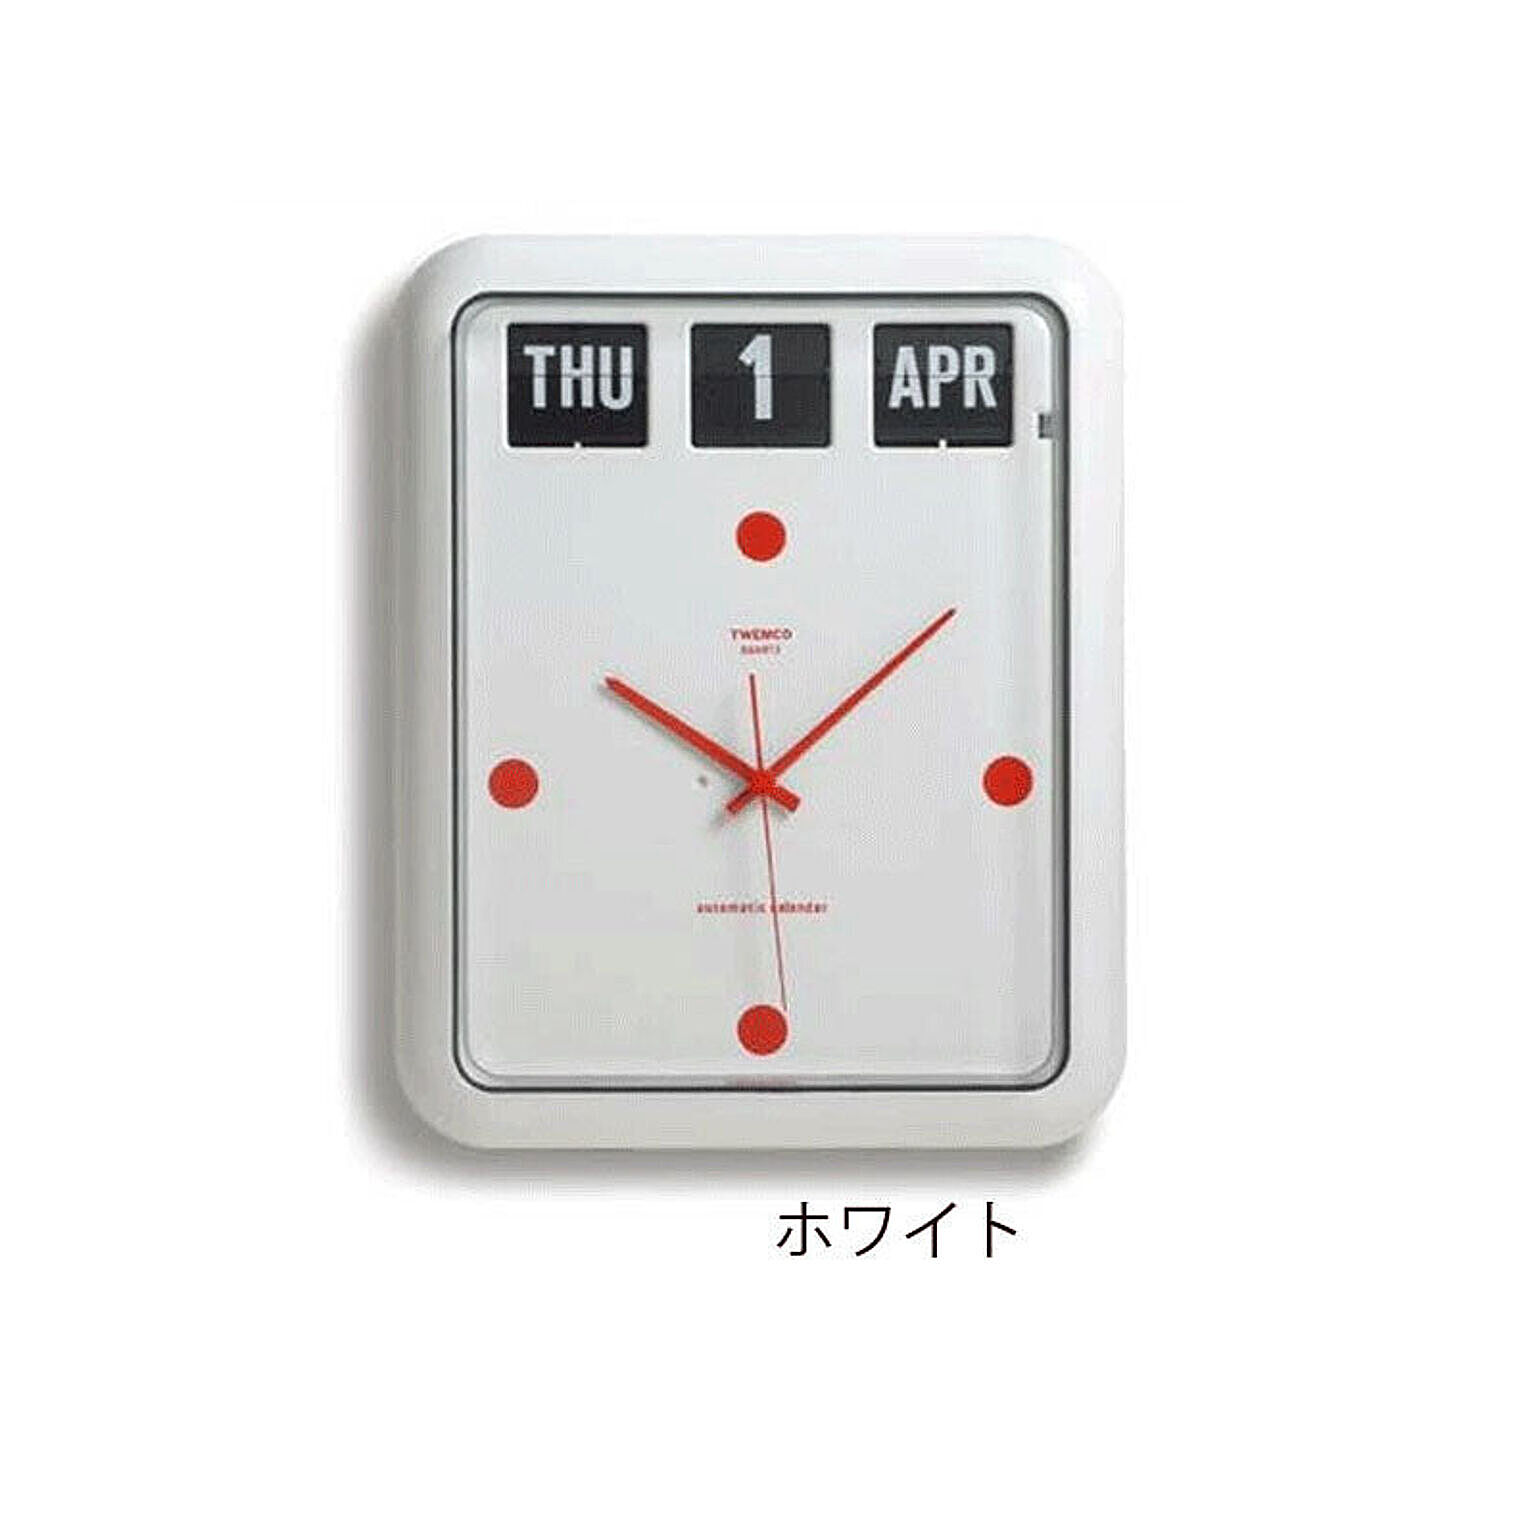 【CREPHA/クレファー】TWEMCO トゥエンコ 掛け時計  BQ-12バークレー